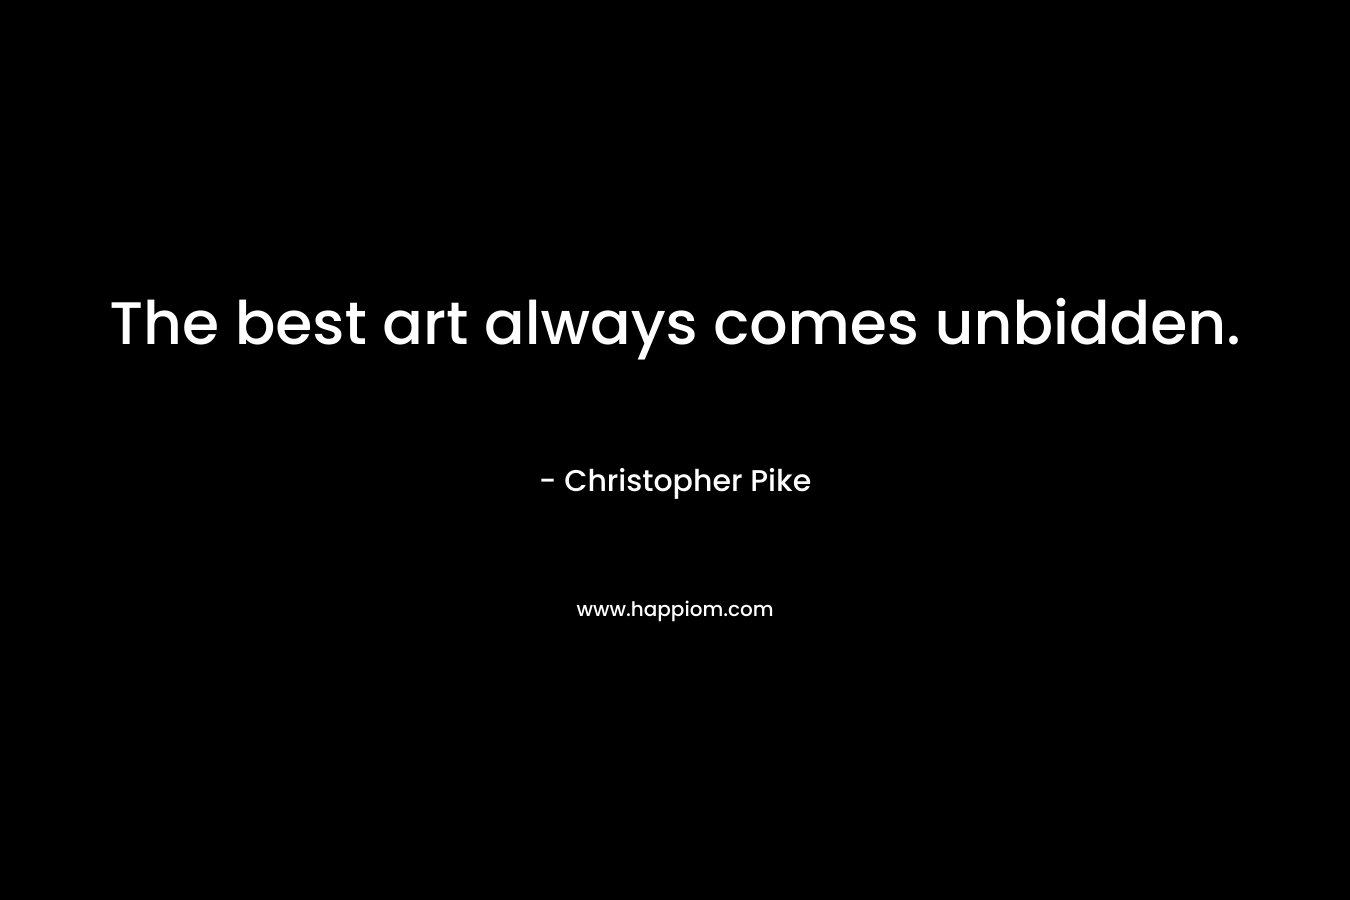 The best art always comes unbidden.